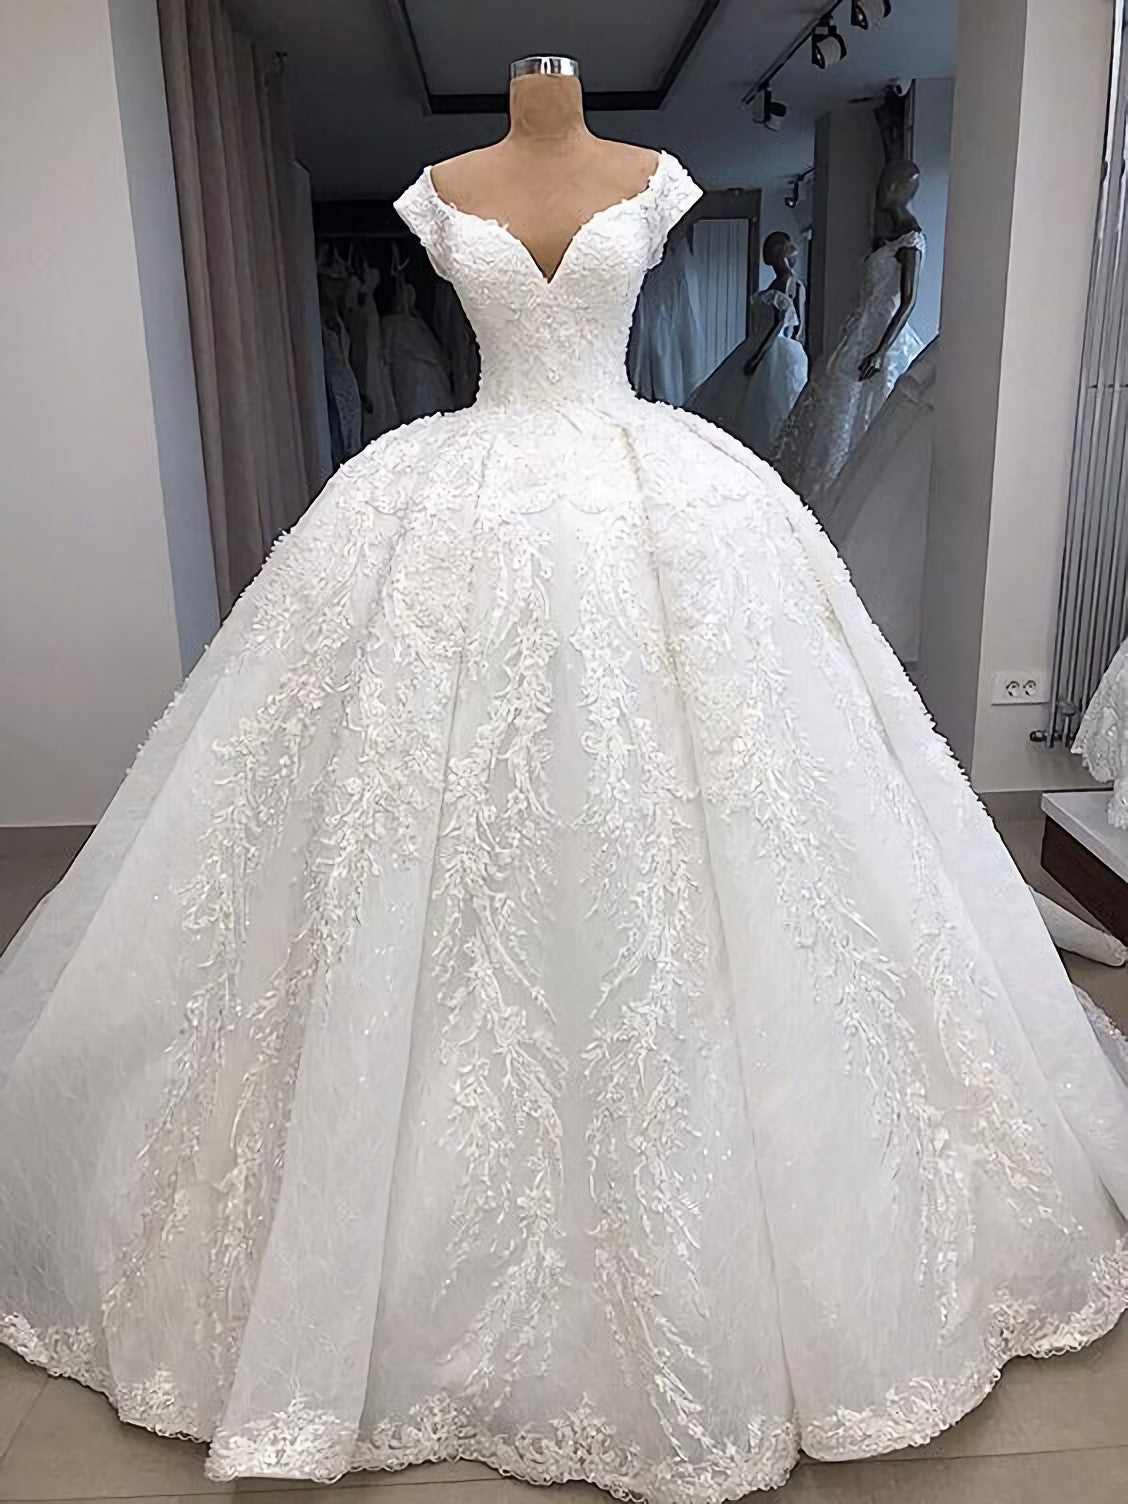 Wedding Dress Styling, Sexy Prom Dress, Ball Gown Evening Dress, Wedding Dress